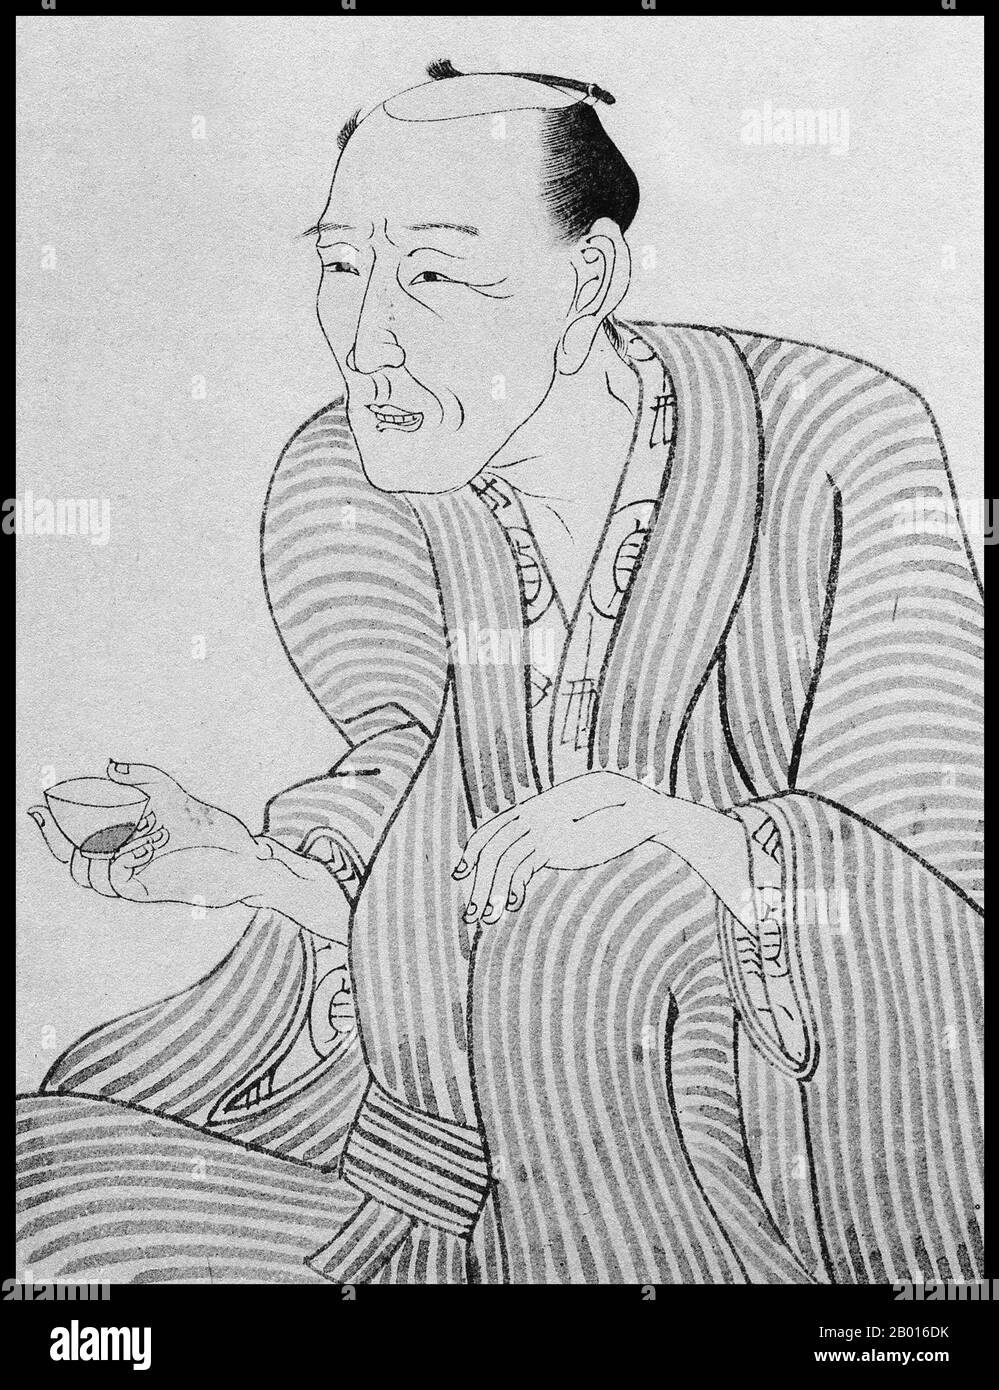 Japon : Portrait de Jippensha Ikku (1765 – 12 septembre 1831), écrivain japonais.Illustration par Utagawa Kunisada (1786-1865), 19e siècle.Jippensha Ikku, véritable nom de Shigeta Sadakazu, était un écrivain japonais prolifique de la fin de la période Edo.Il vivait principalement à Edo (Tokyo) au service des samouraïs, mais aussi à Osaka comme homme de ville.Il a été parmi les auteurs de roman (kibyōshi) à dos jaune les plus prolifiques de son temps - entre 1795 et 1801 il a écrit un minimum de vingt romans par an, et ensuite a écrit sharebon, kokkeibon et plus de 360 histoires illustrées (gokan). Banque D'Images